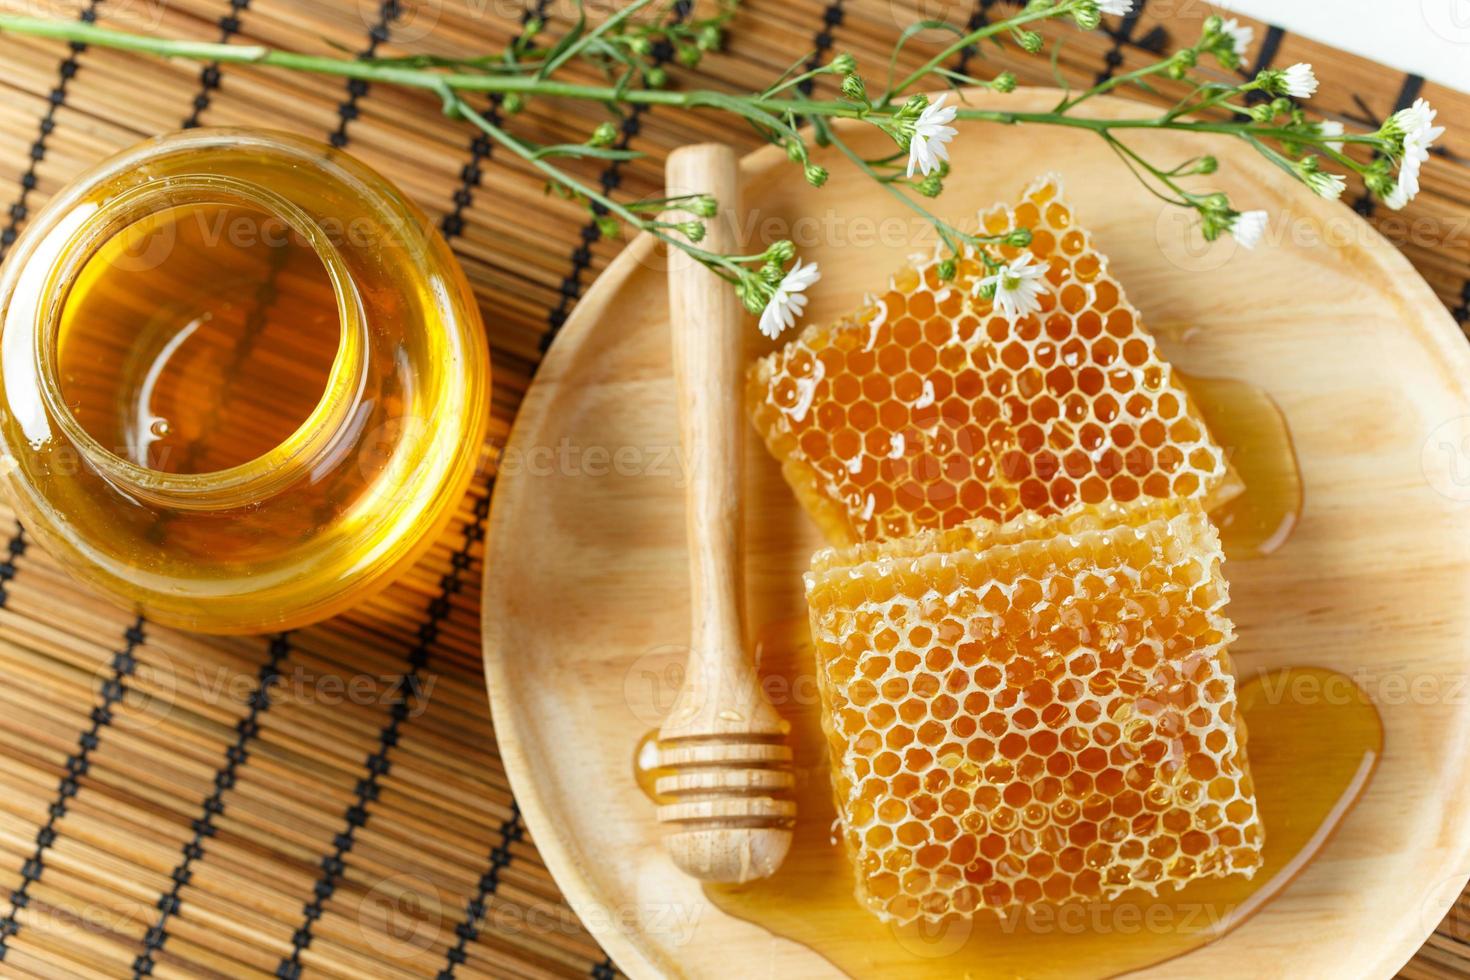 Nid d'abeille gros plan sur le napperon en bambou photo